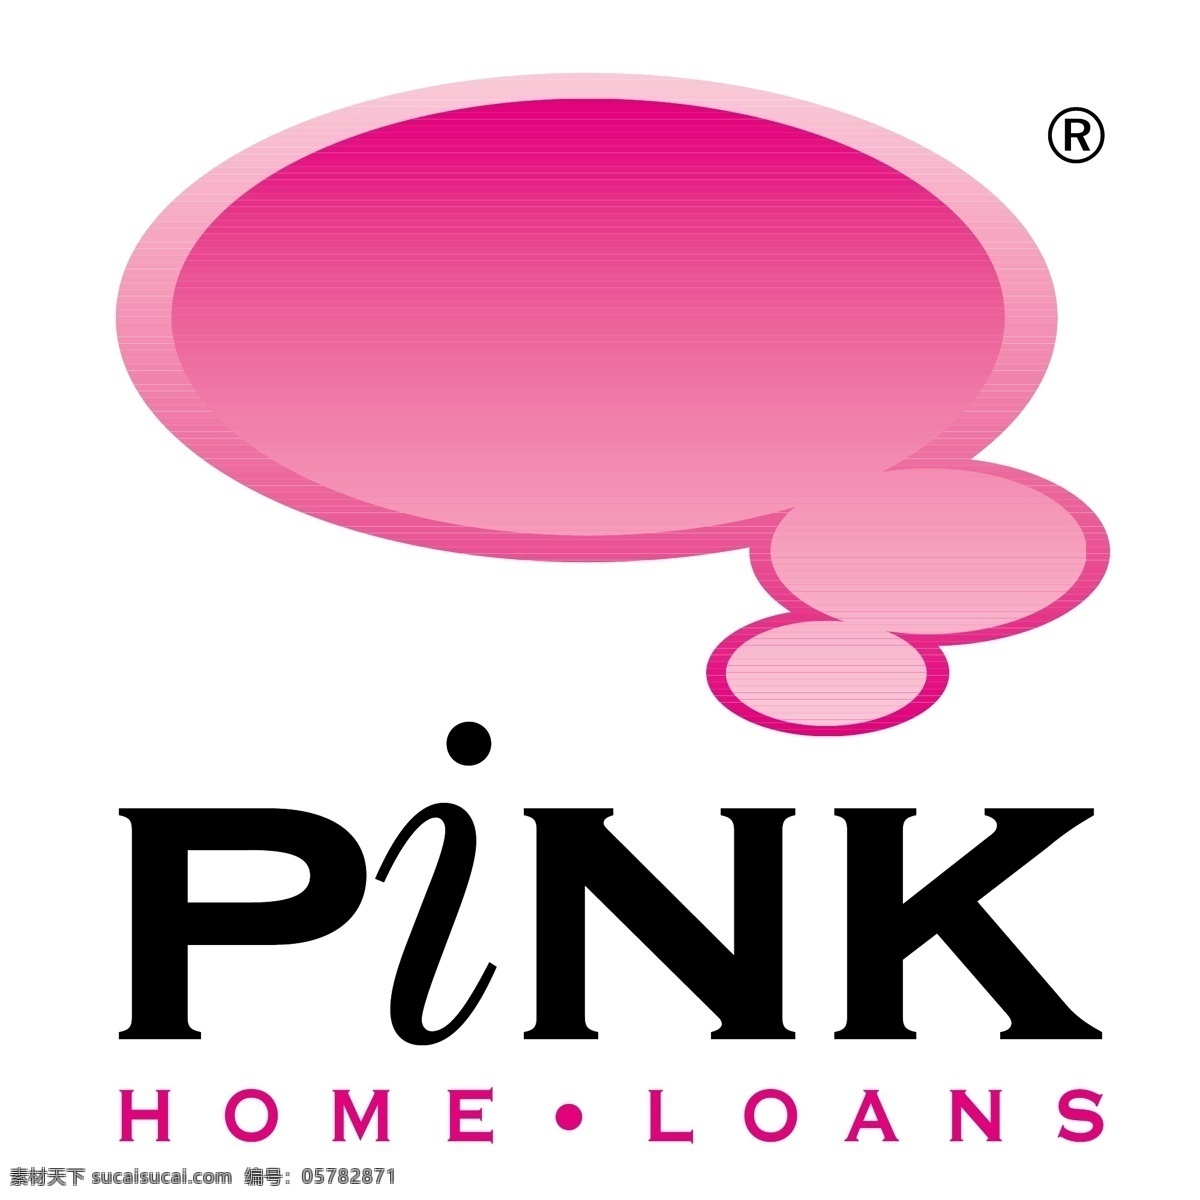 粉红色 房屋 贷款 粉红色的 粉红色的图片 家庭 粉红色的家庭 家庭贷款 向量 家居 矢量房贷 矢量家粉红 粉红粉红的家 粉红色的设计 矢量的粉红色 免费 矢量 粉红 载体